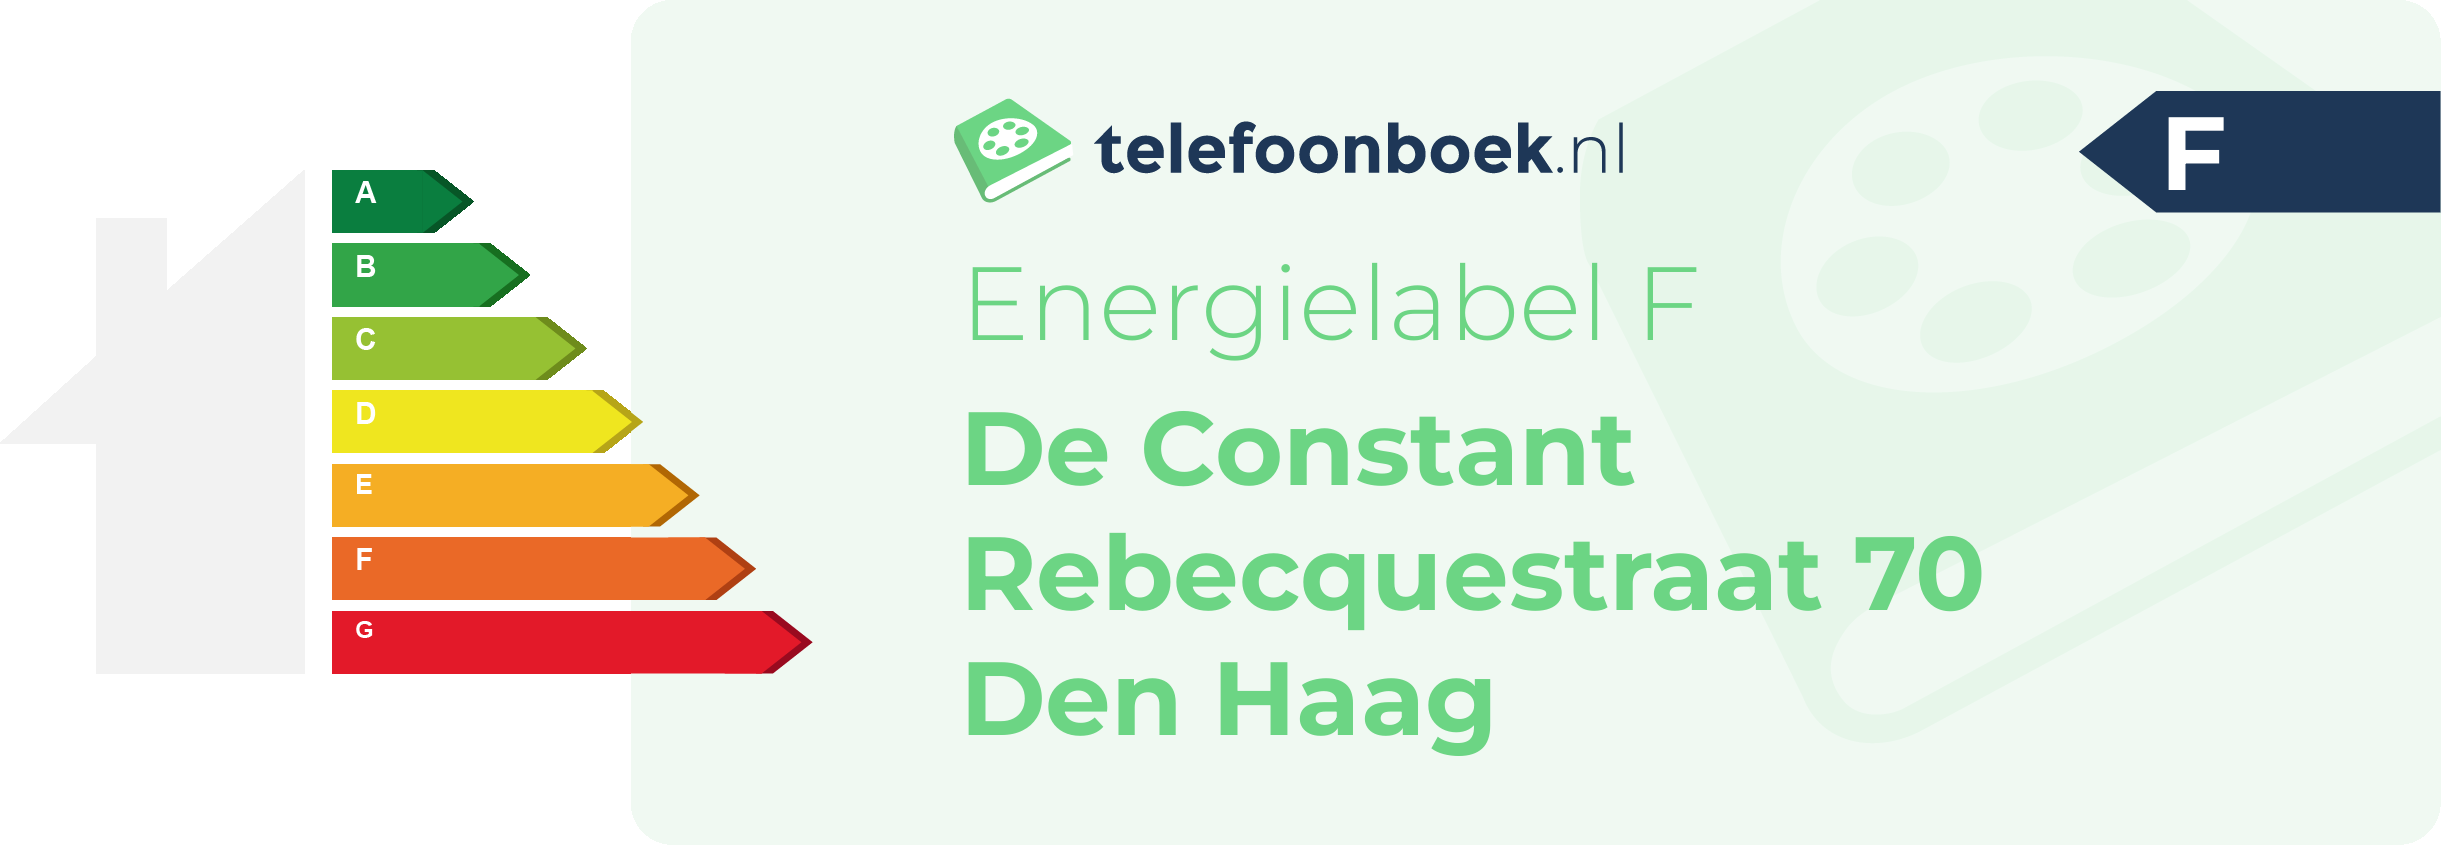 Energielabel De Constant Rebecquestraat 70 Den Haag